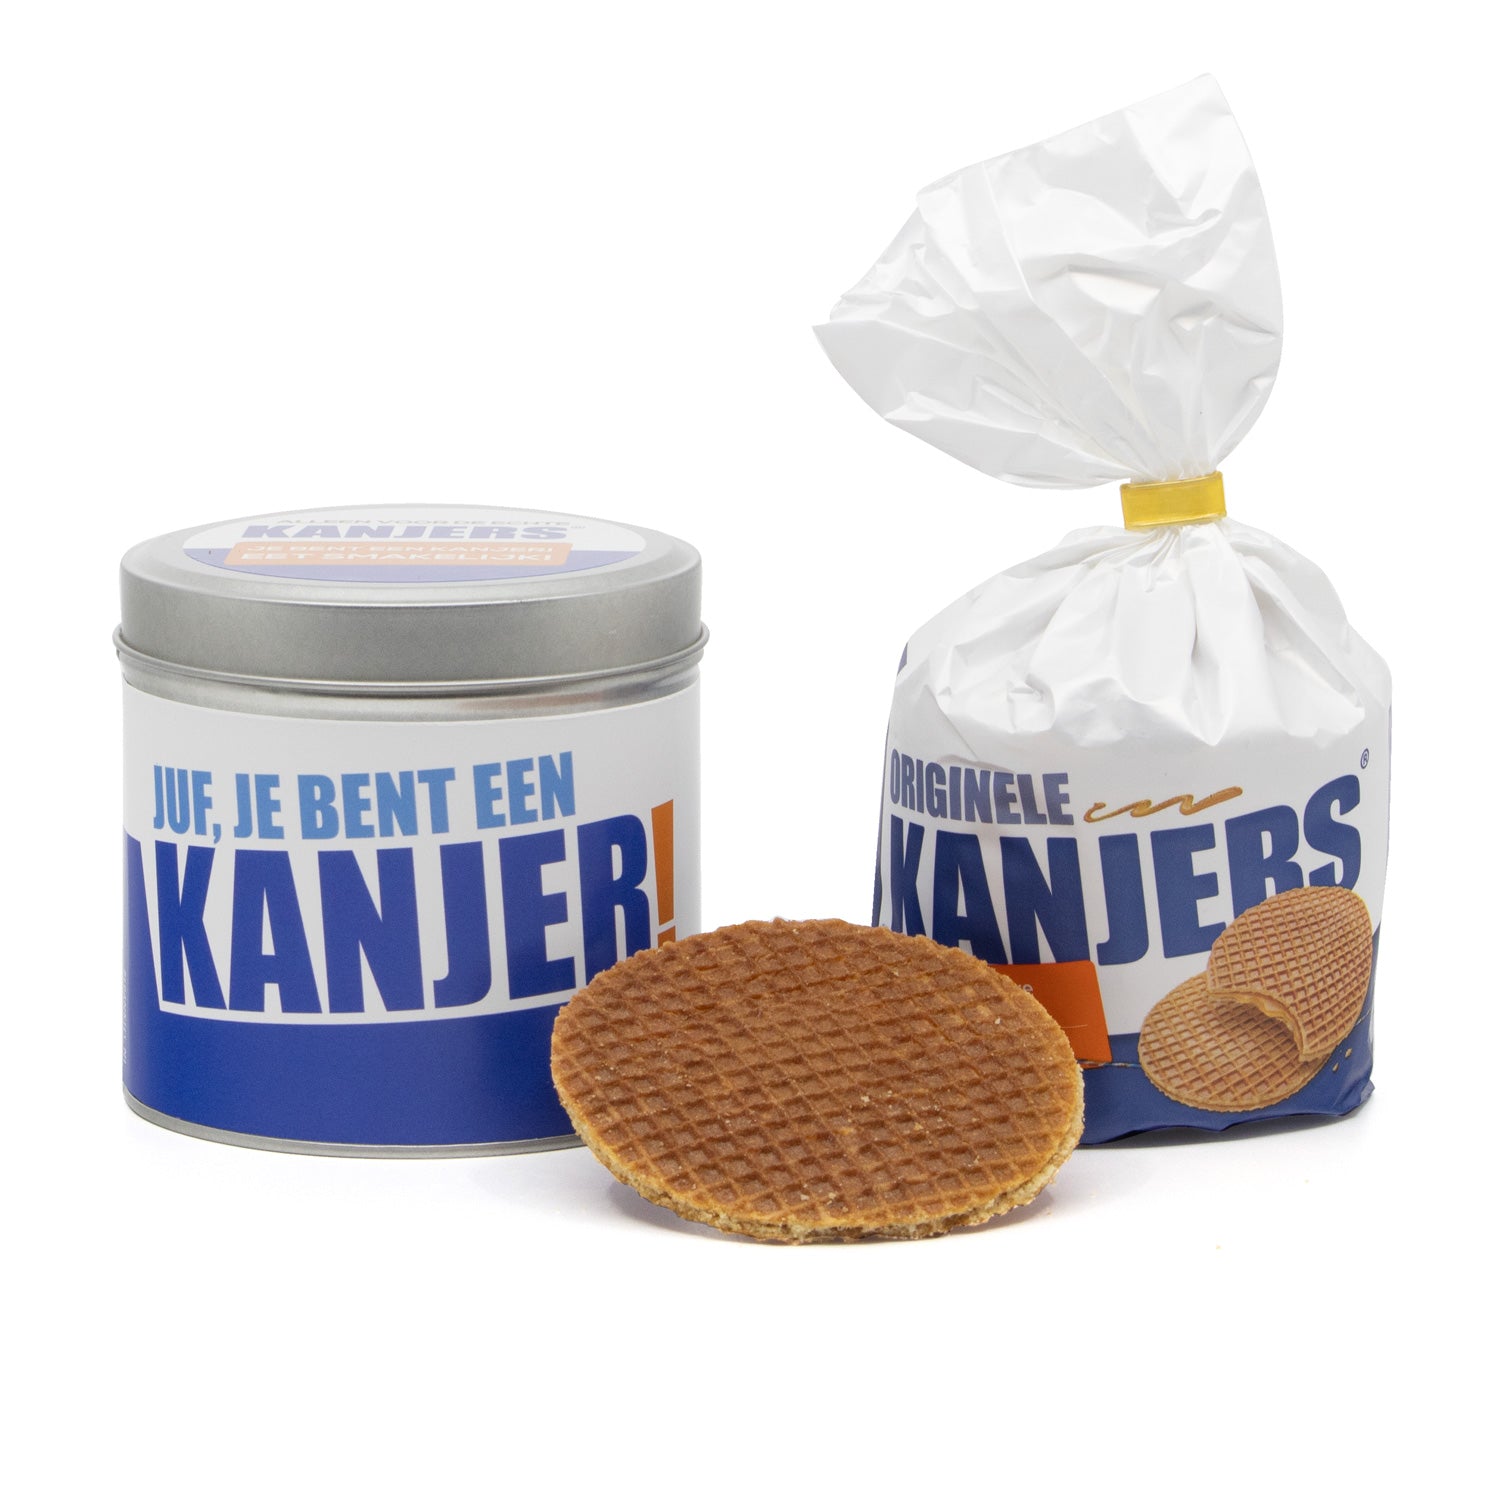 Meester/Juf kanjers stroopwafels in blik - Bedankjes.nl